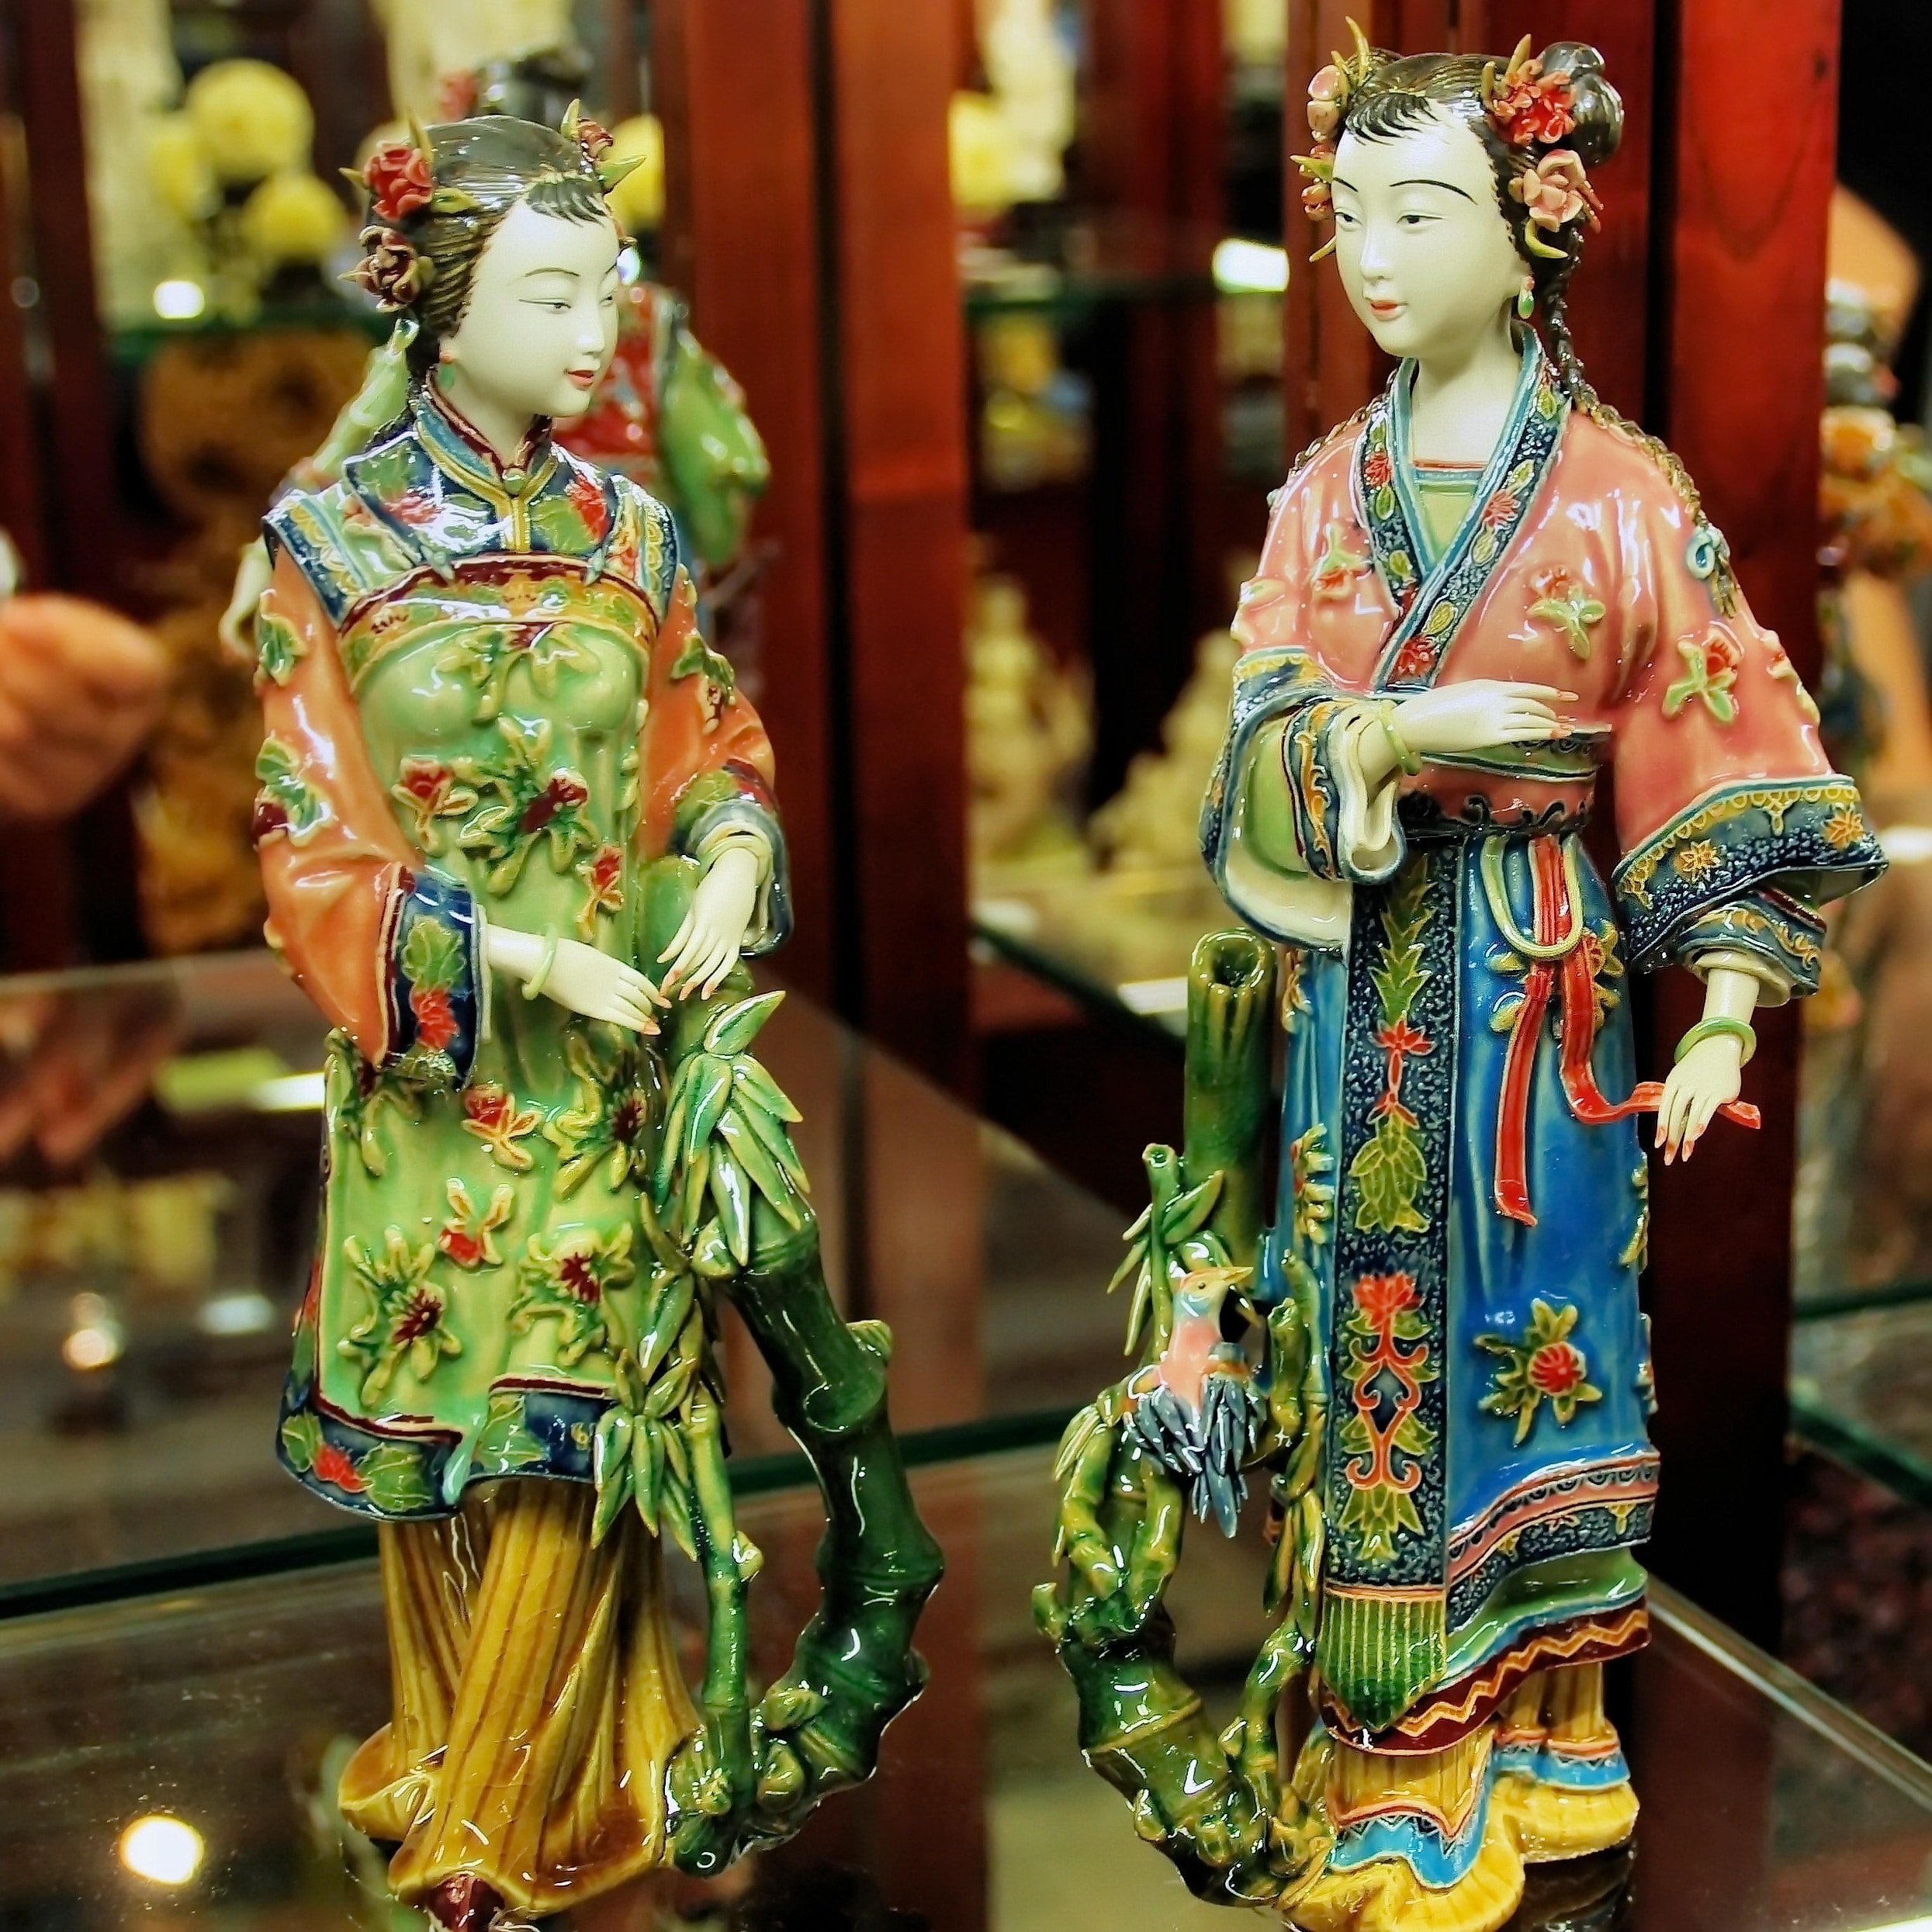 2 geisha ceramic figurines